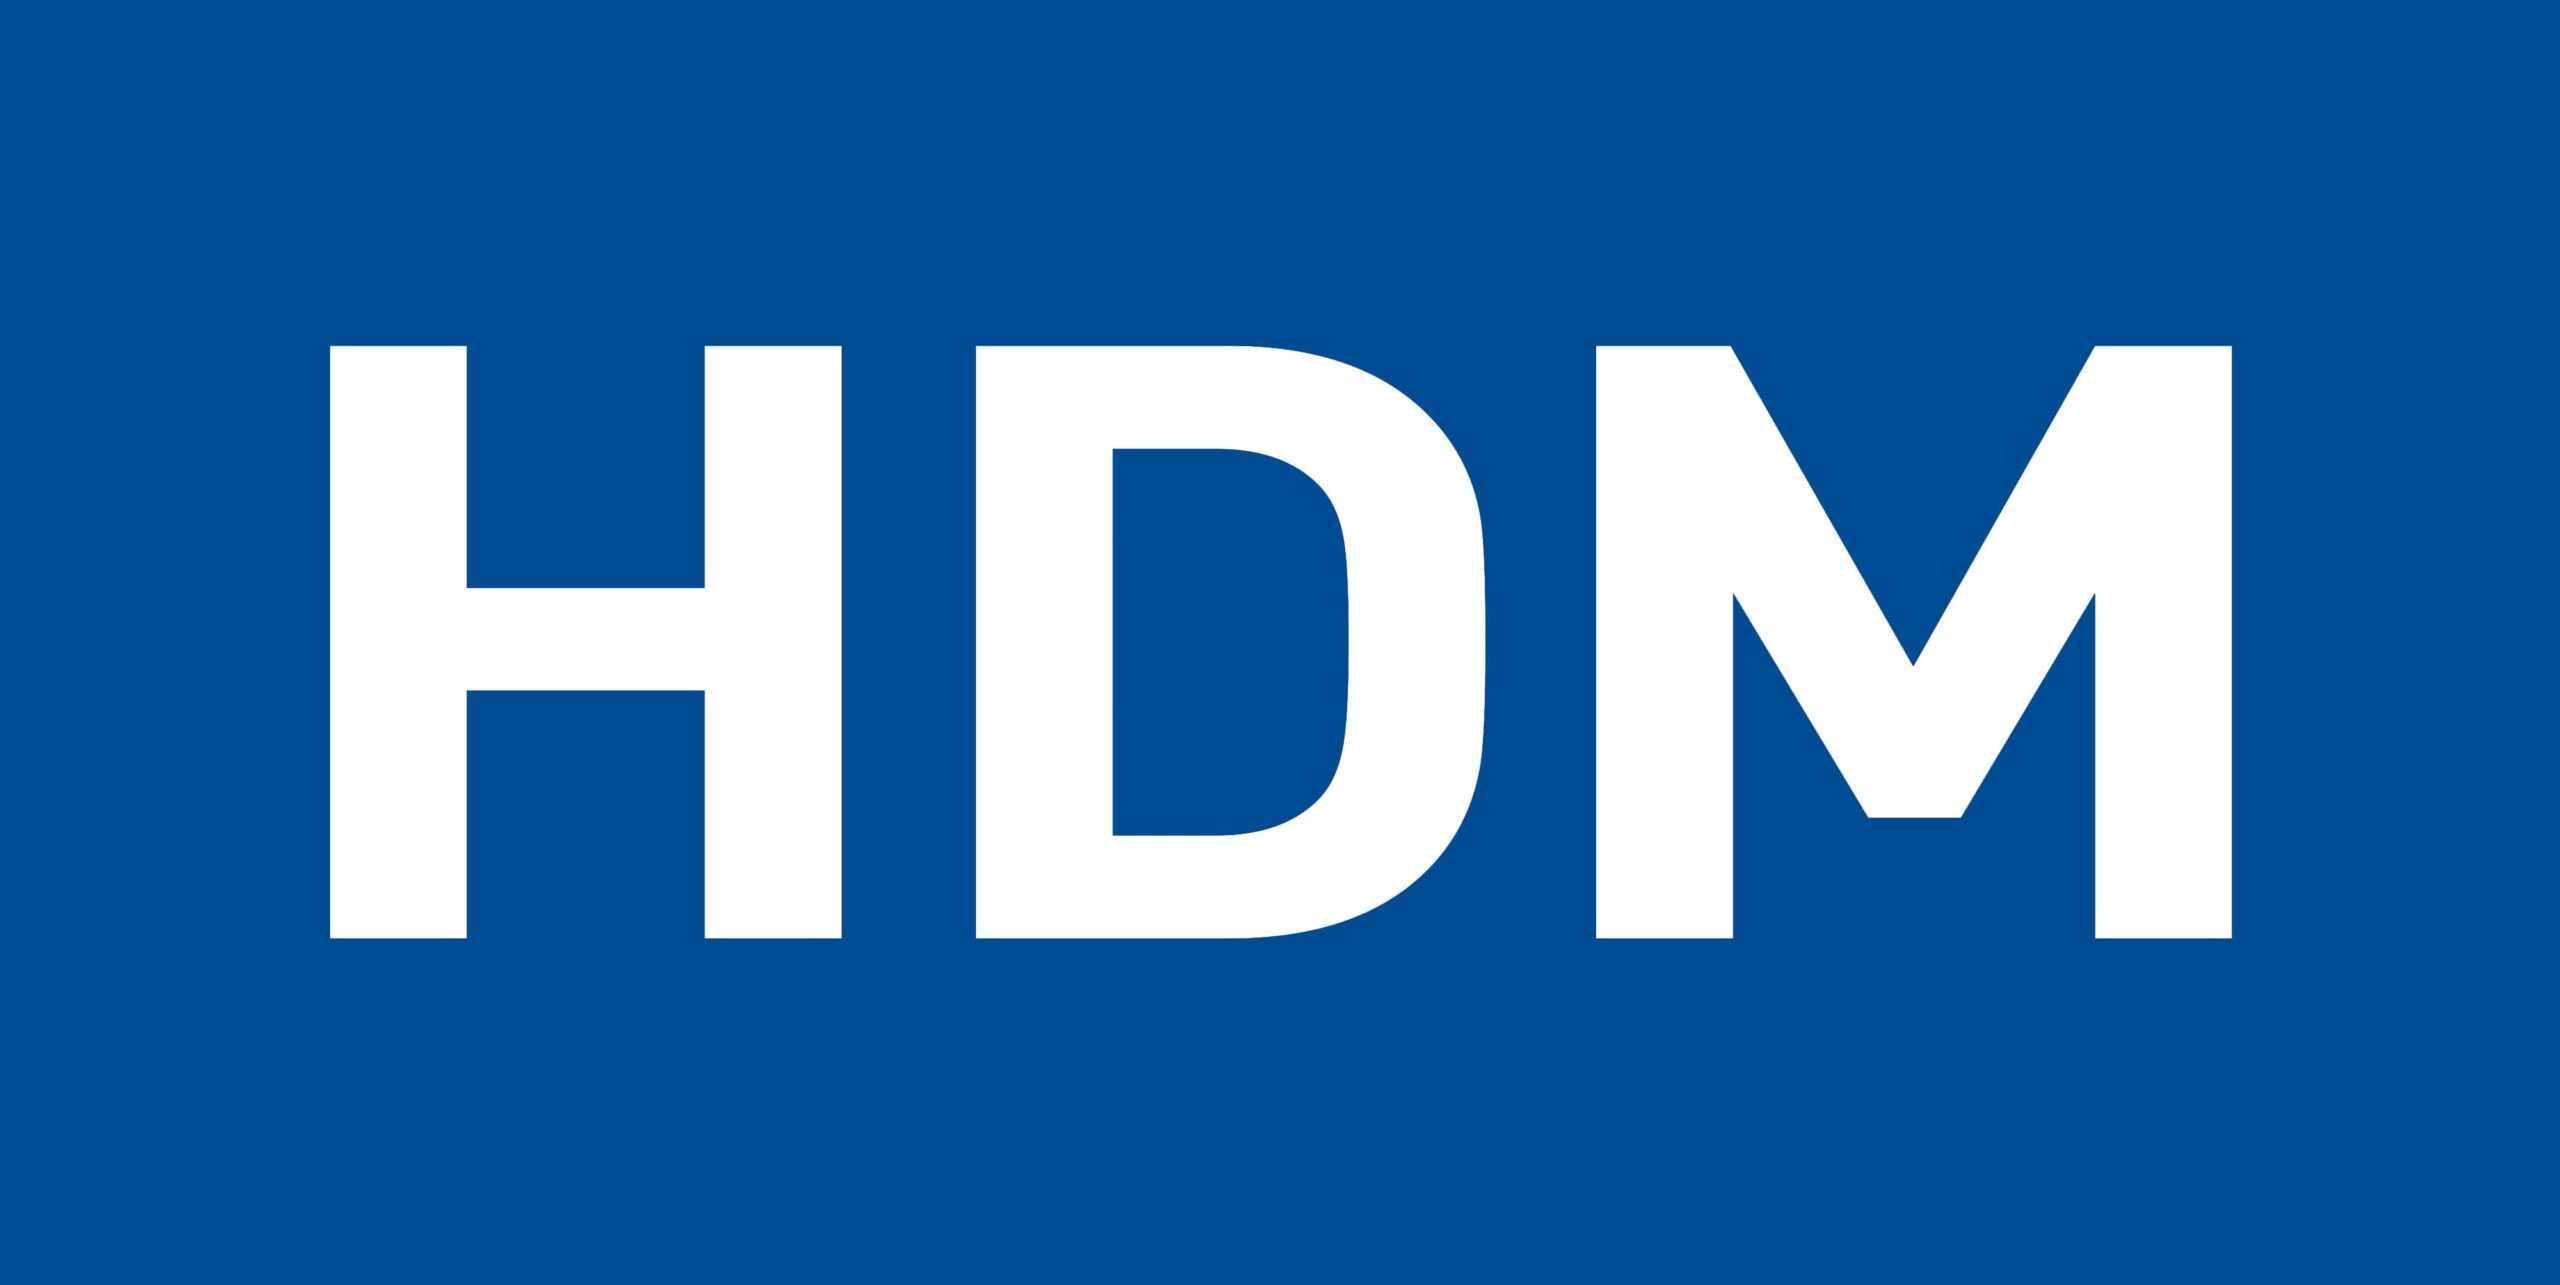 HDM